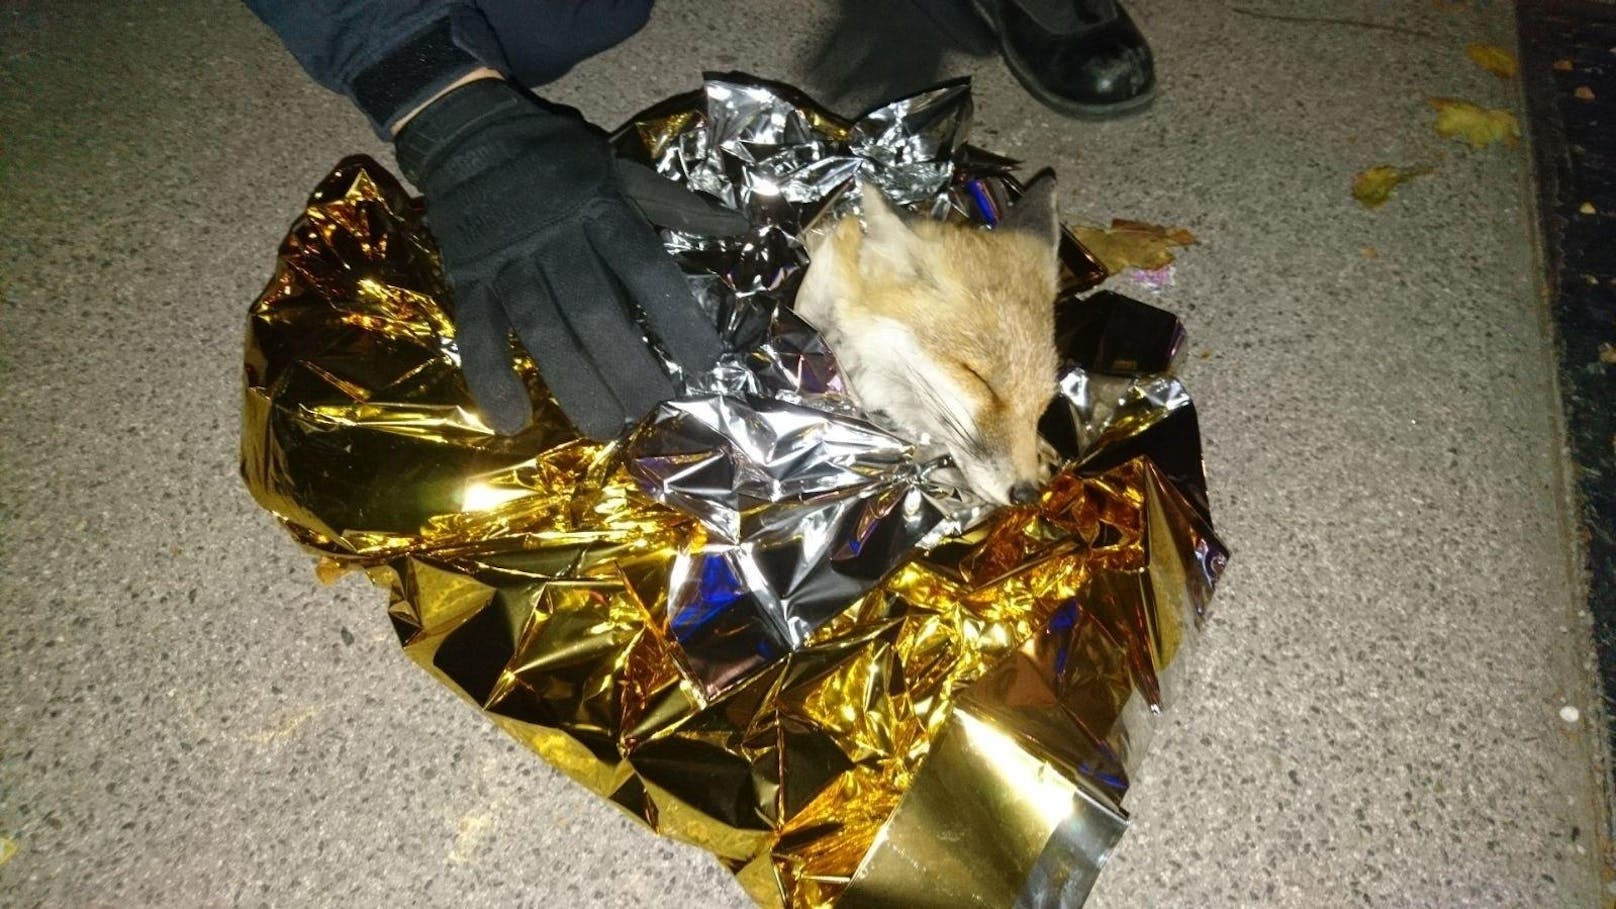 Der gerettete Fuchs wurde von Beamten in eine Rettungsfolie gewickelt.